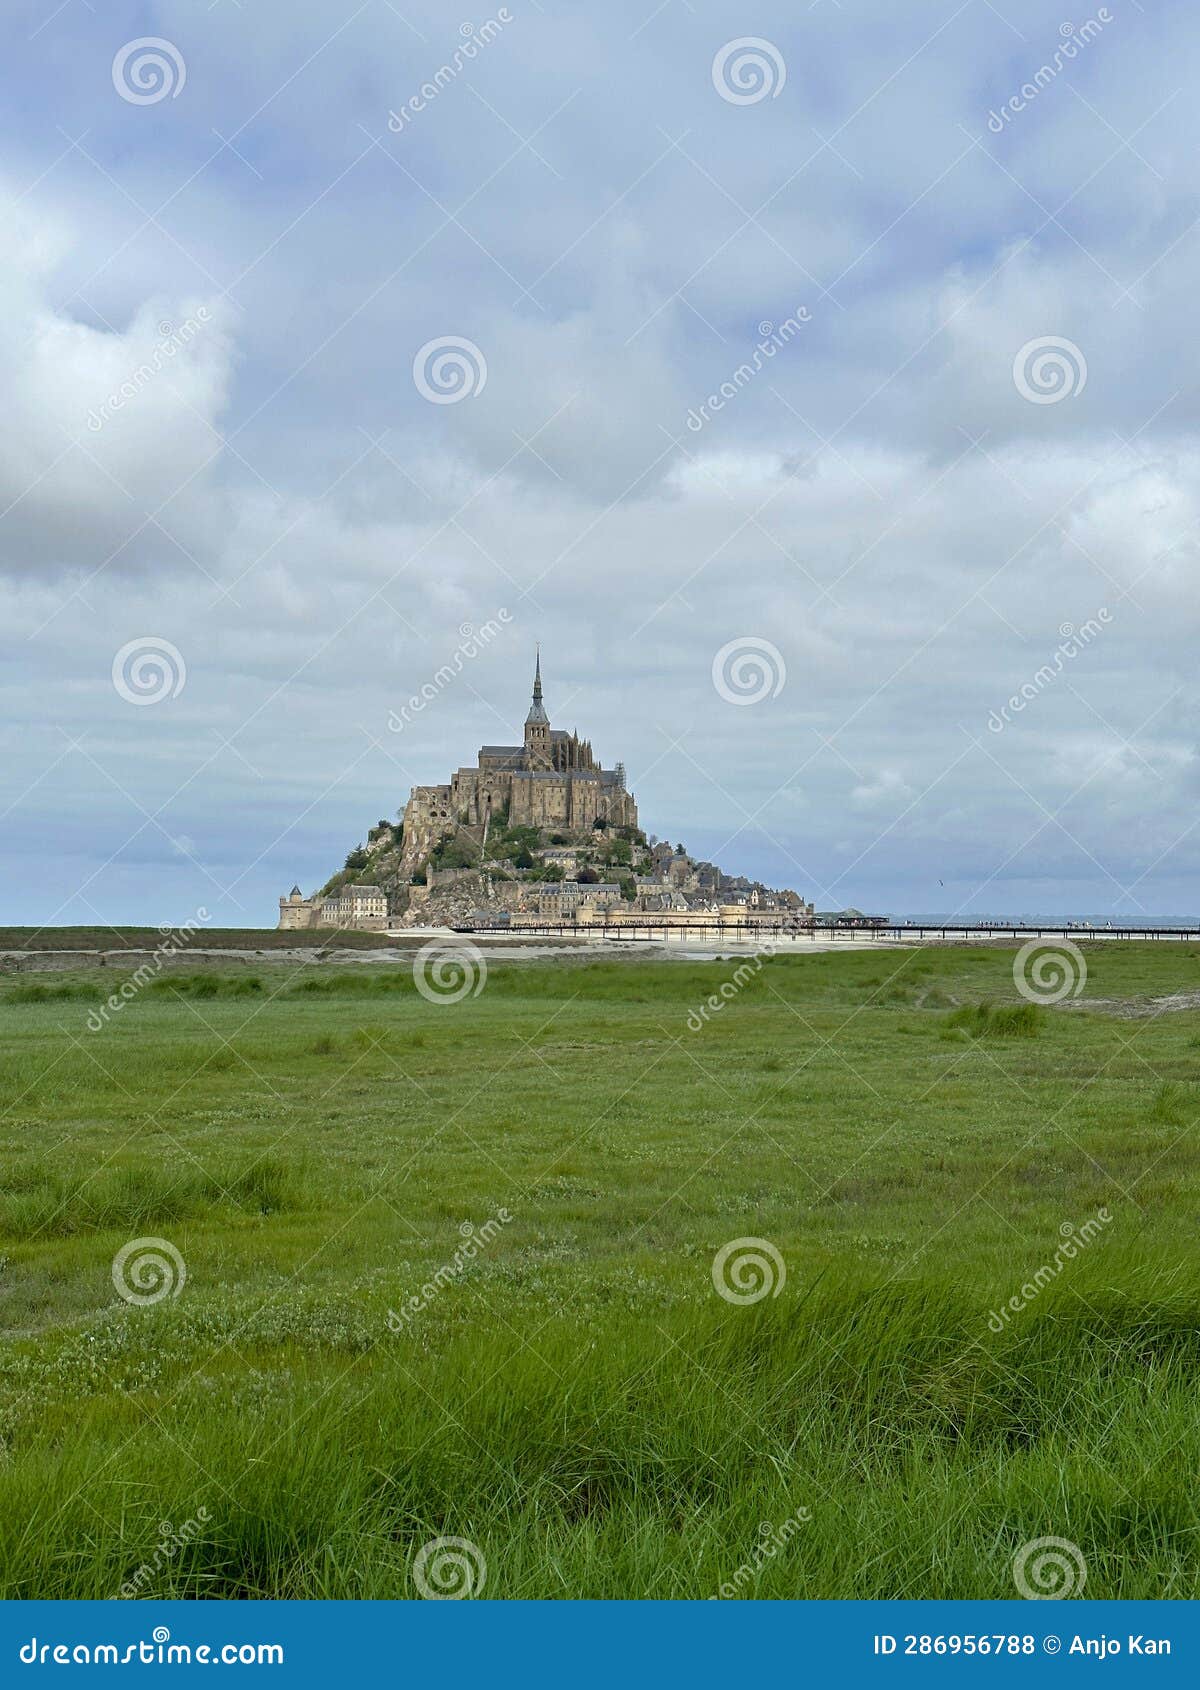 Mont Saint-Michel Castle Beach France Famous Stock Photo - Image of ...